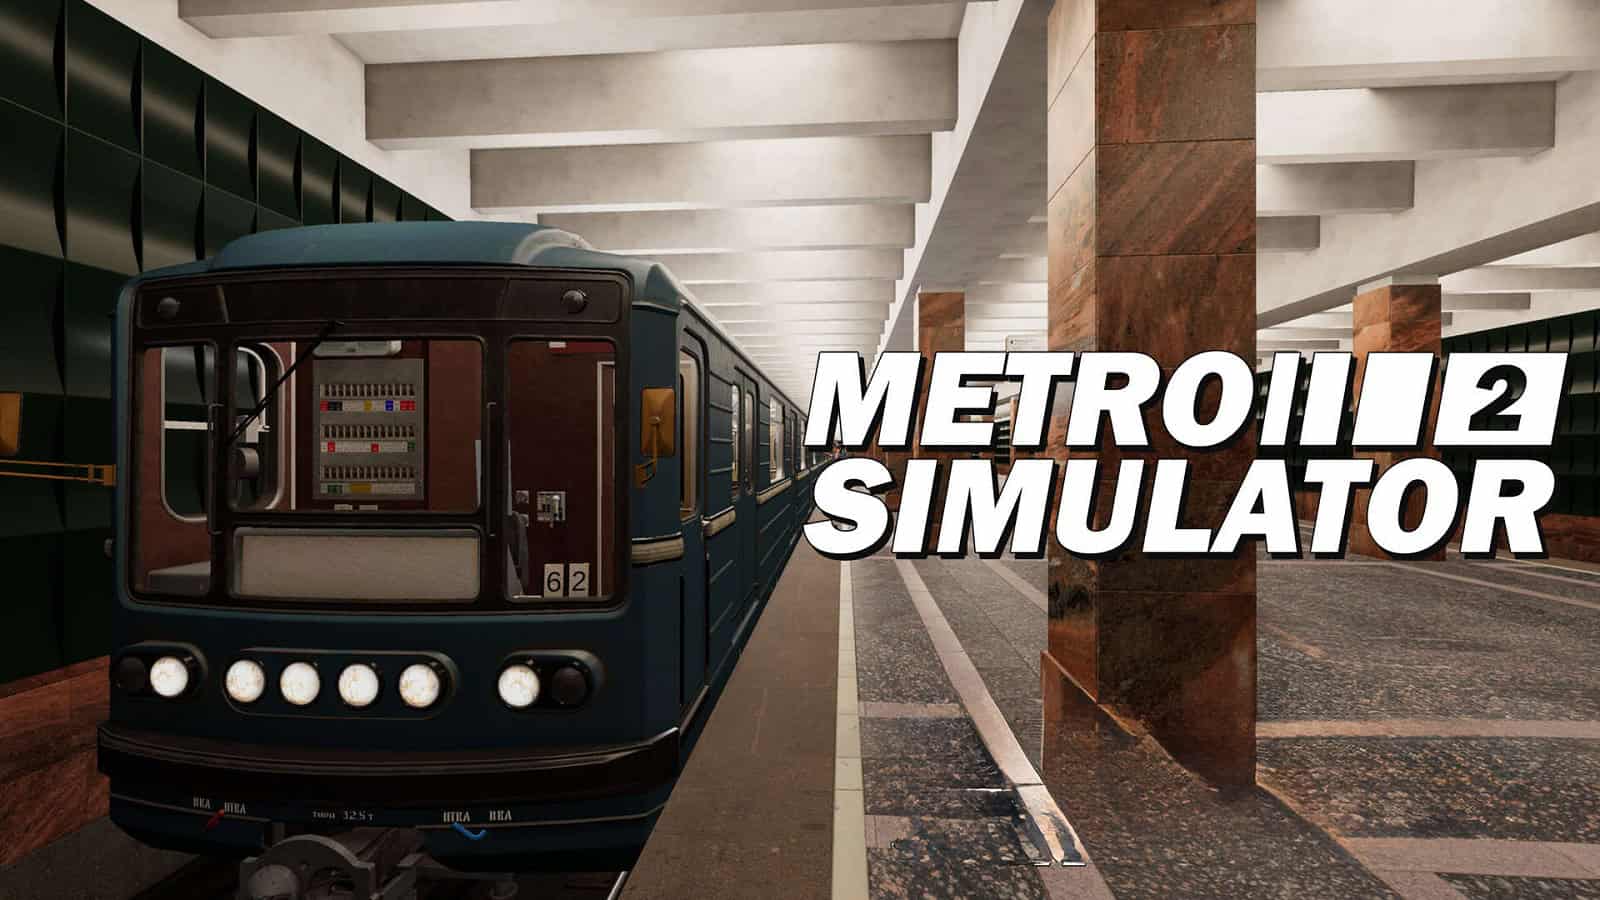 Metro, Simulator, 2, gaming